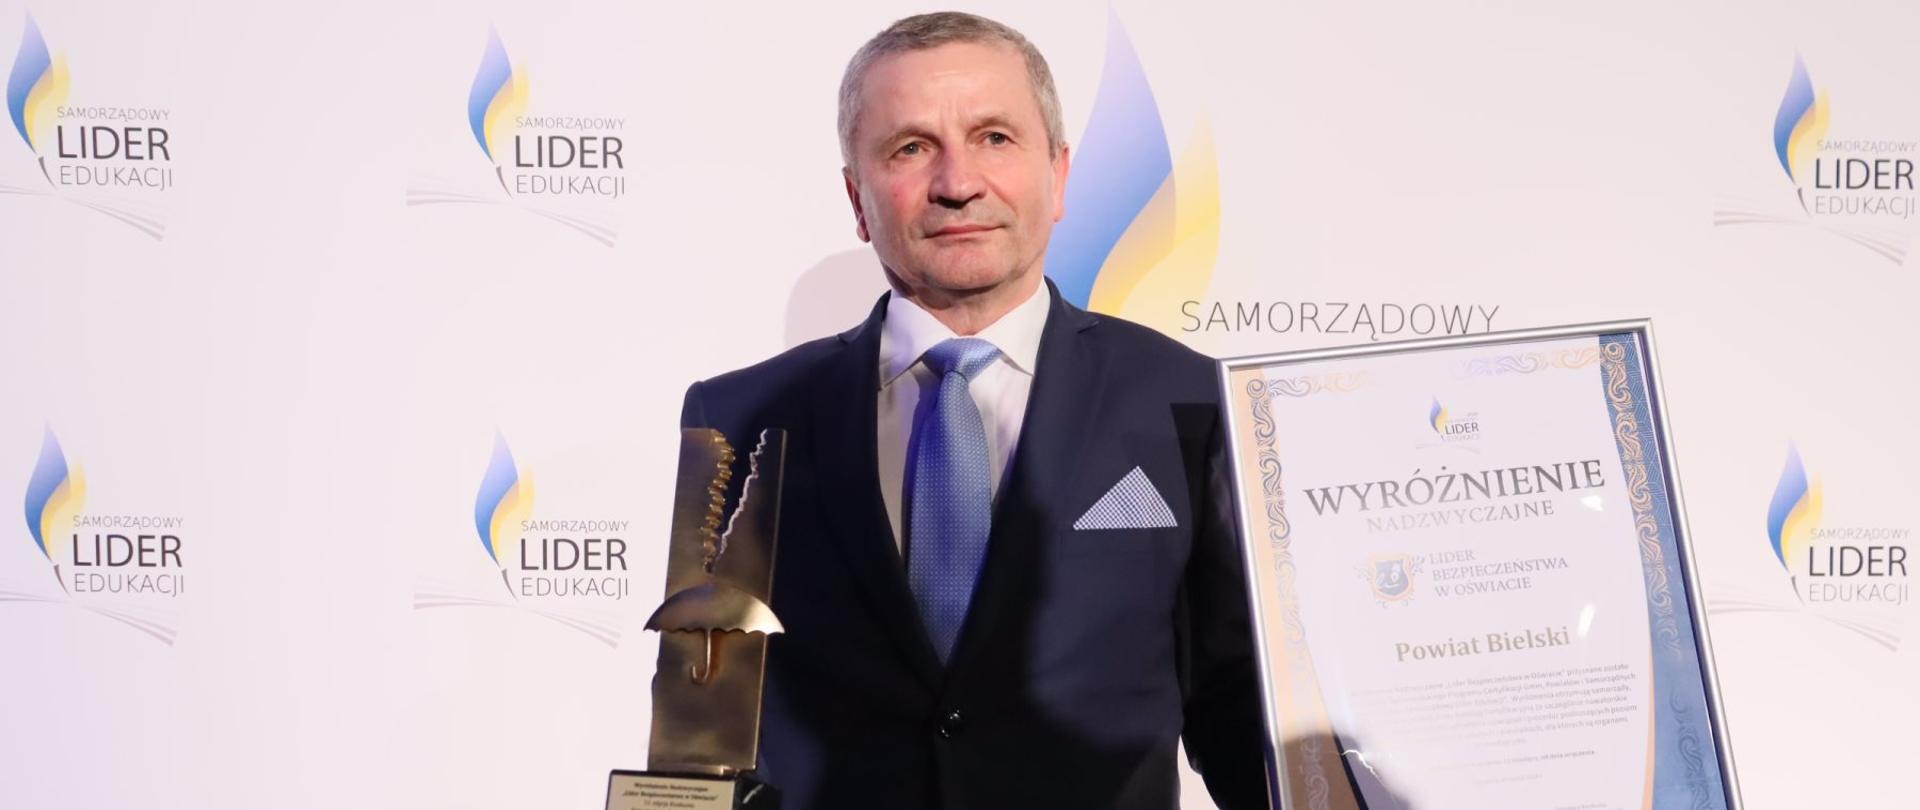 Naczelnik Wydziału Oświaty, Kultury i Ochrony Zdrowia Anatol Grzegorz Tymiński z certyfikatem i statuetką